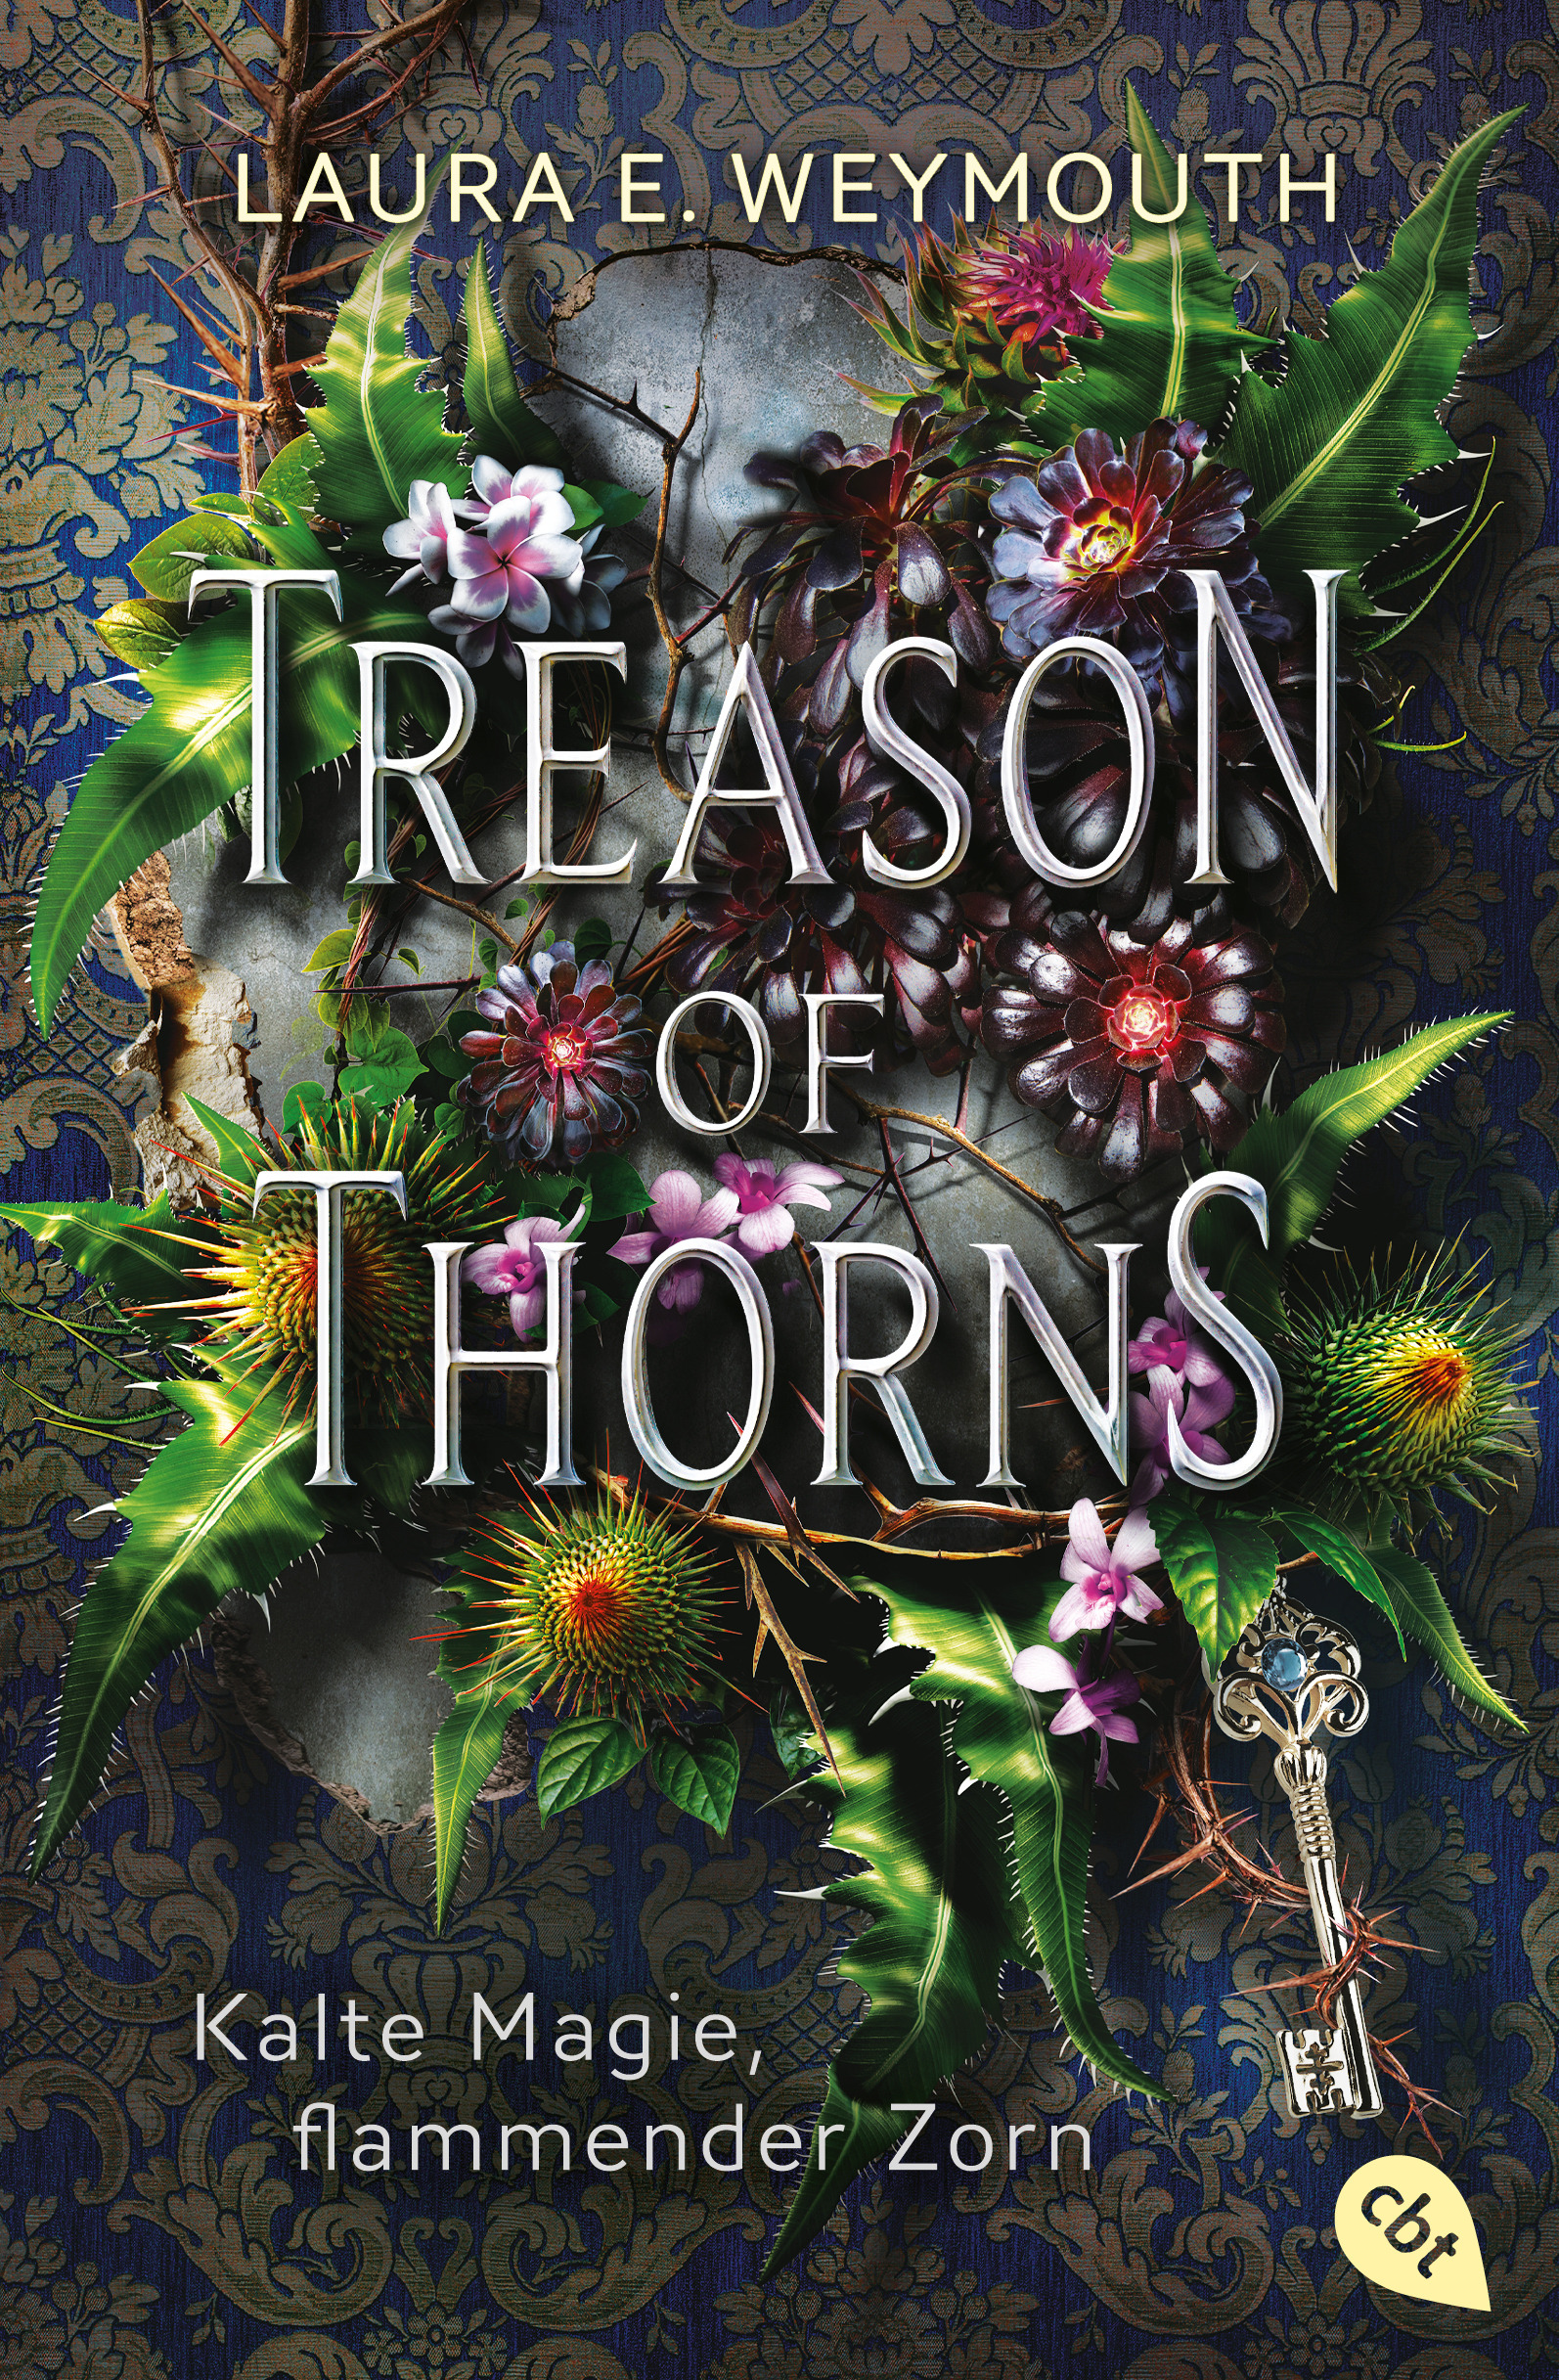 Bücherblog. Neuerscheinungen. Buchcover. Treason of Thorns - Kalte Magie, flammender Zorn von Laura Elyse Weymouth. Fantasy. Jugendbuch. cbt.